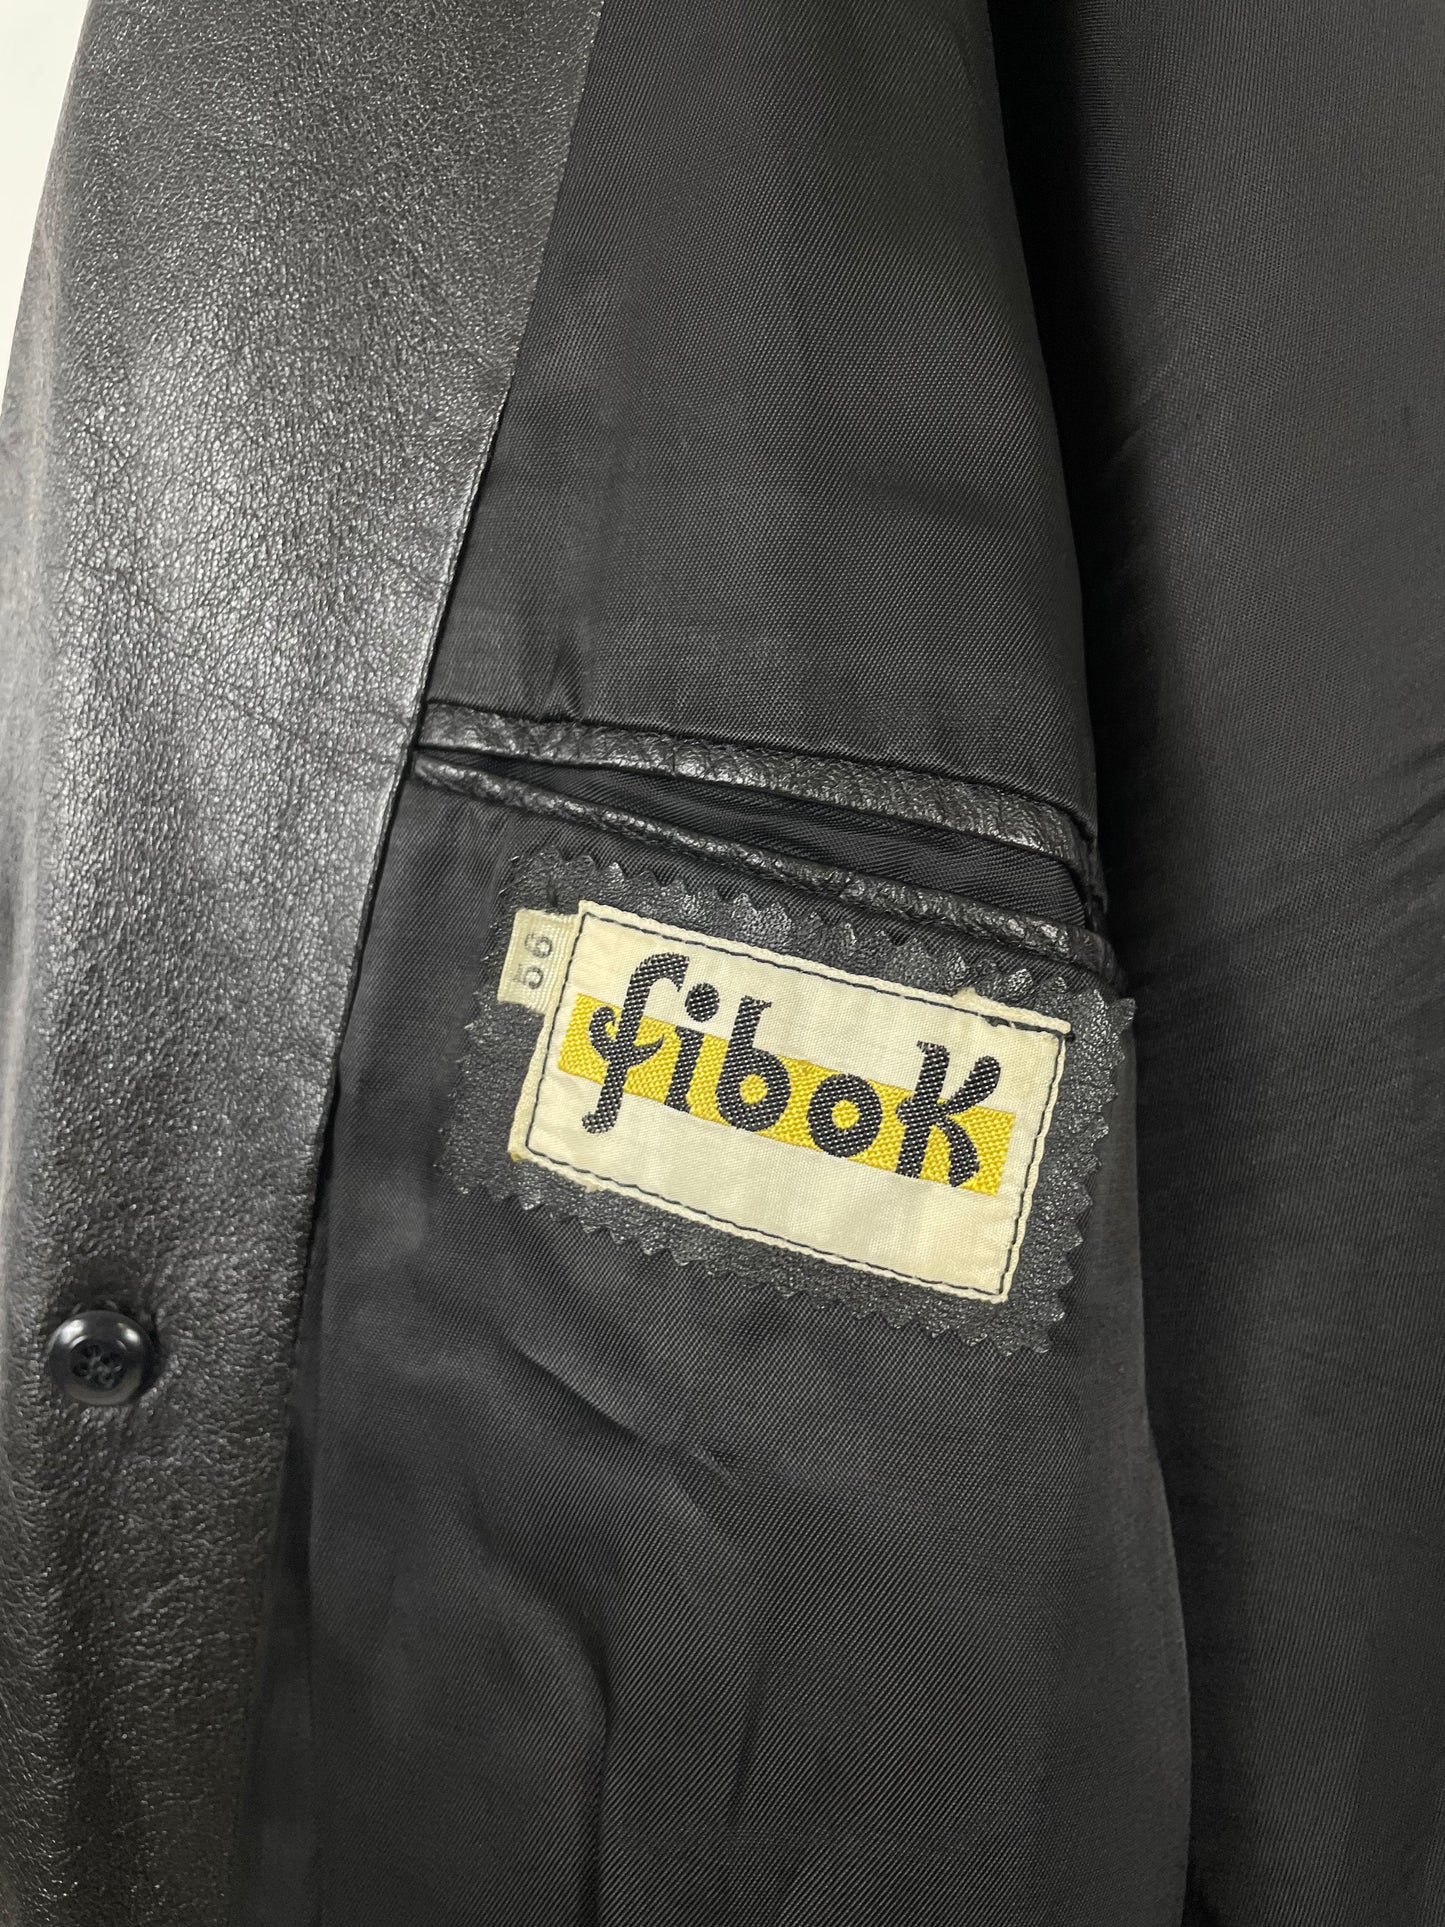 Fibok Long Coat 1980s